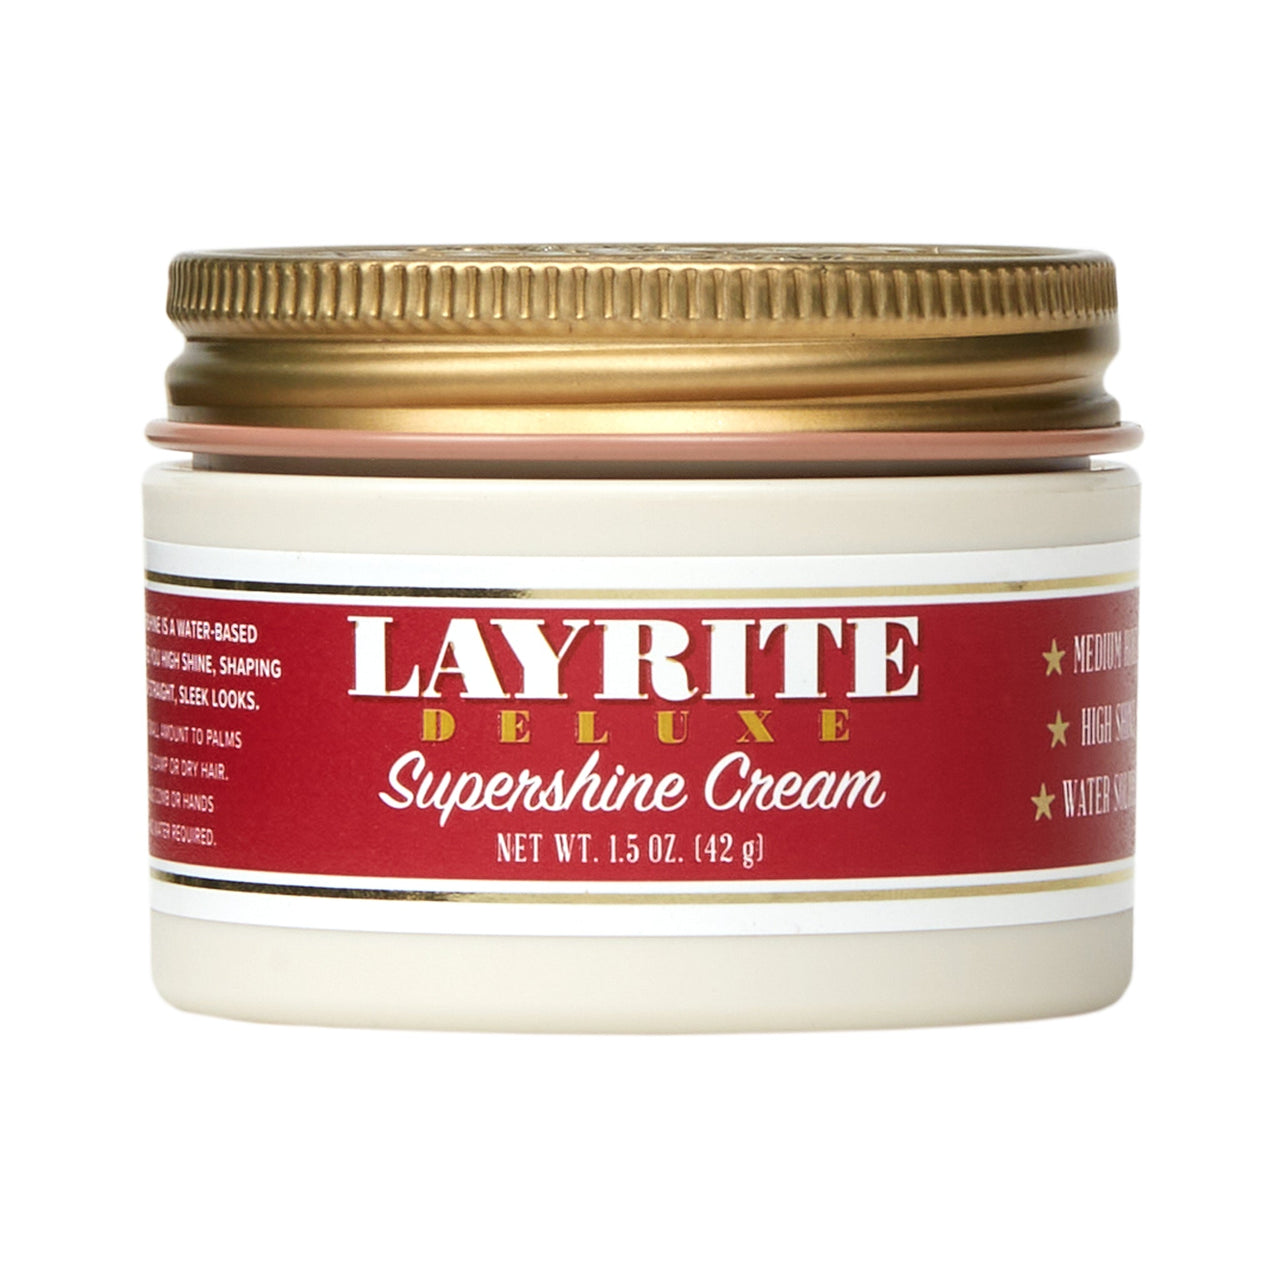 LAYRITE_Supershine Cream_Cosmetic World